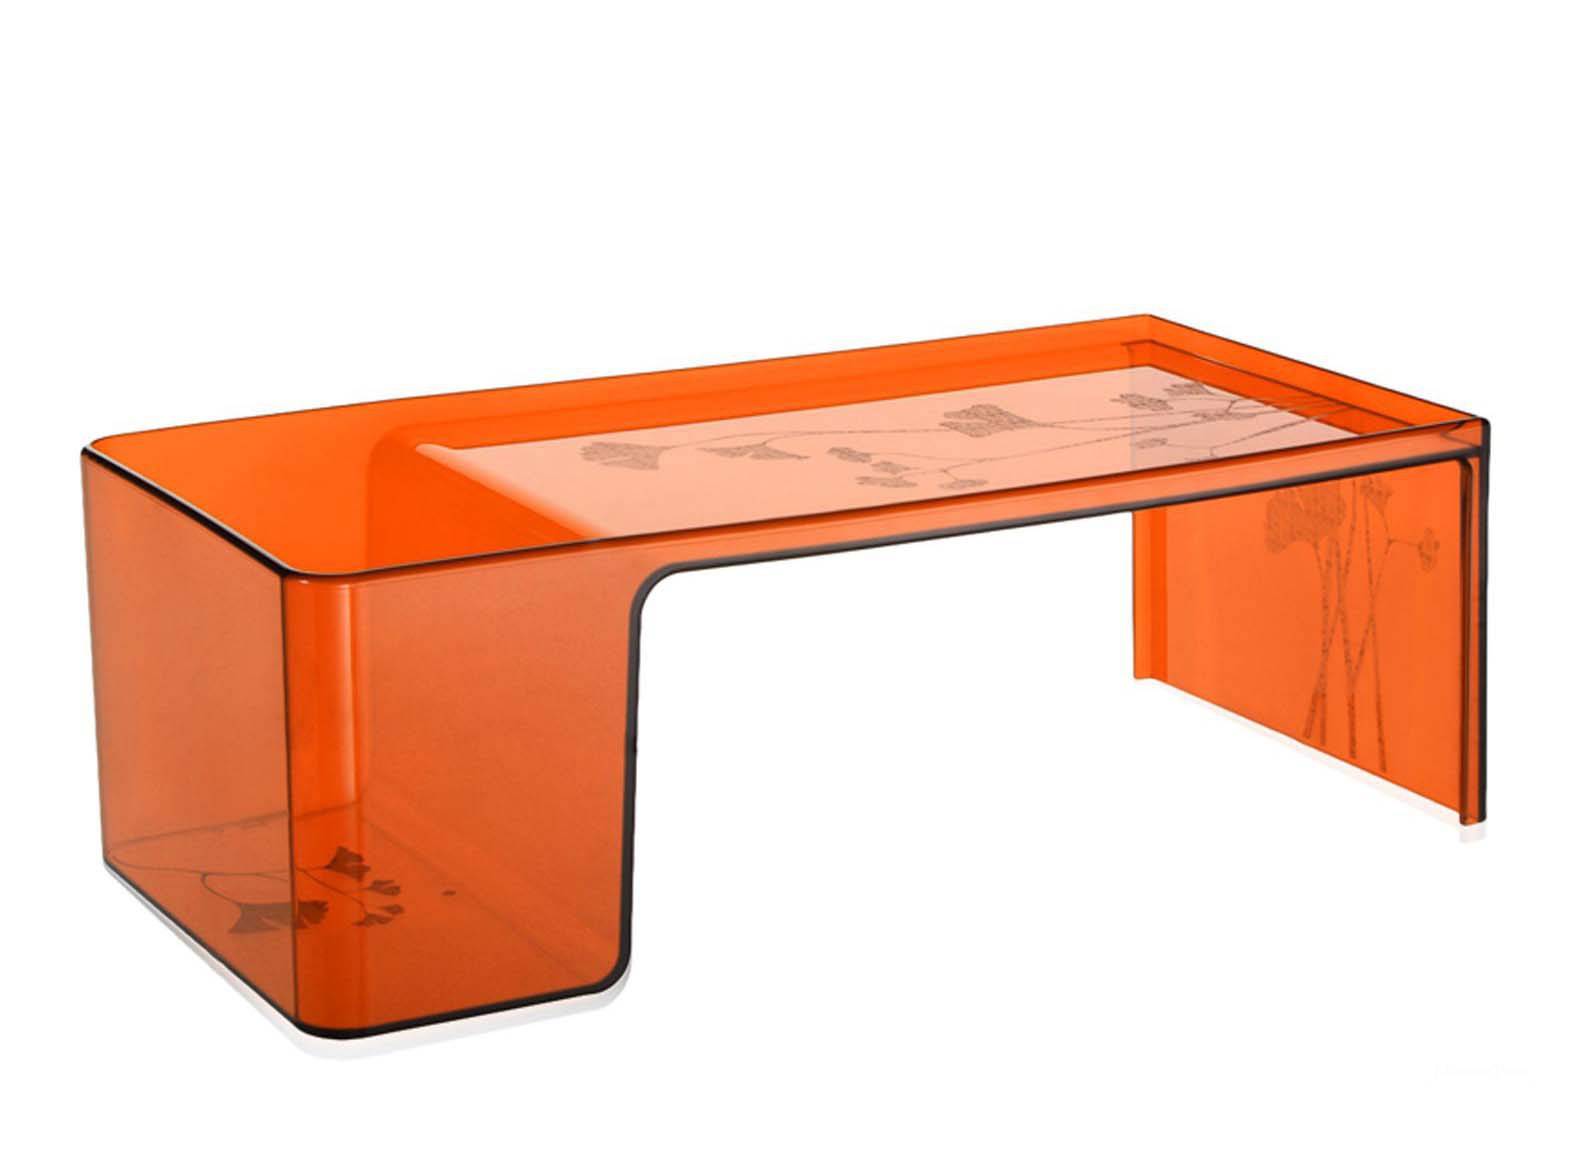 Оранжевый столик. Kartell журнальный столик. Кофейный столик Kartell, модель Thierry 33x50xh50см. Кофейный столик Kartell, модель Thierry Red.